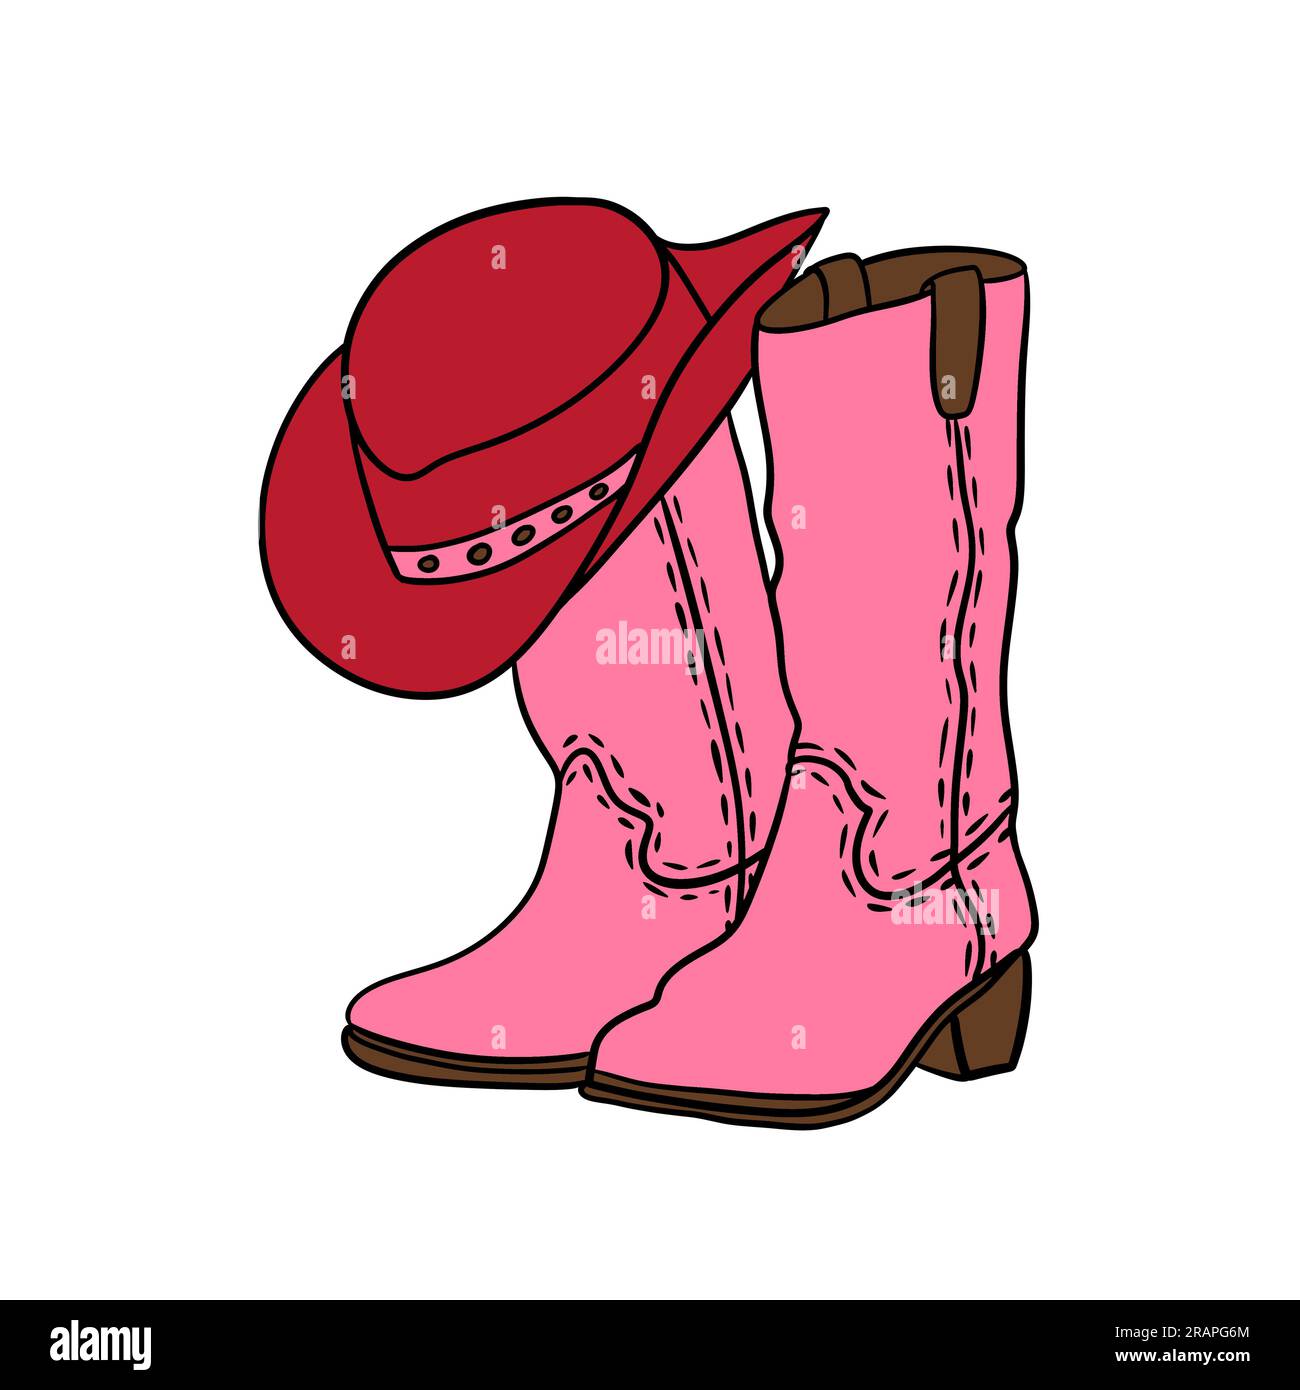 Handgezeichnete Illustration von pinkfarbenen Cowboy Cowgirl Stiefeln roter Hut im westlichen Südwest-Stil. Schwarze Linie mit Ranch-Abenteuer-Design, wilder westamerikanischer Druck, farbenfrohe Cartoon-Schuhe Stockfoto